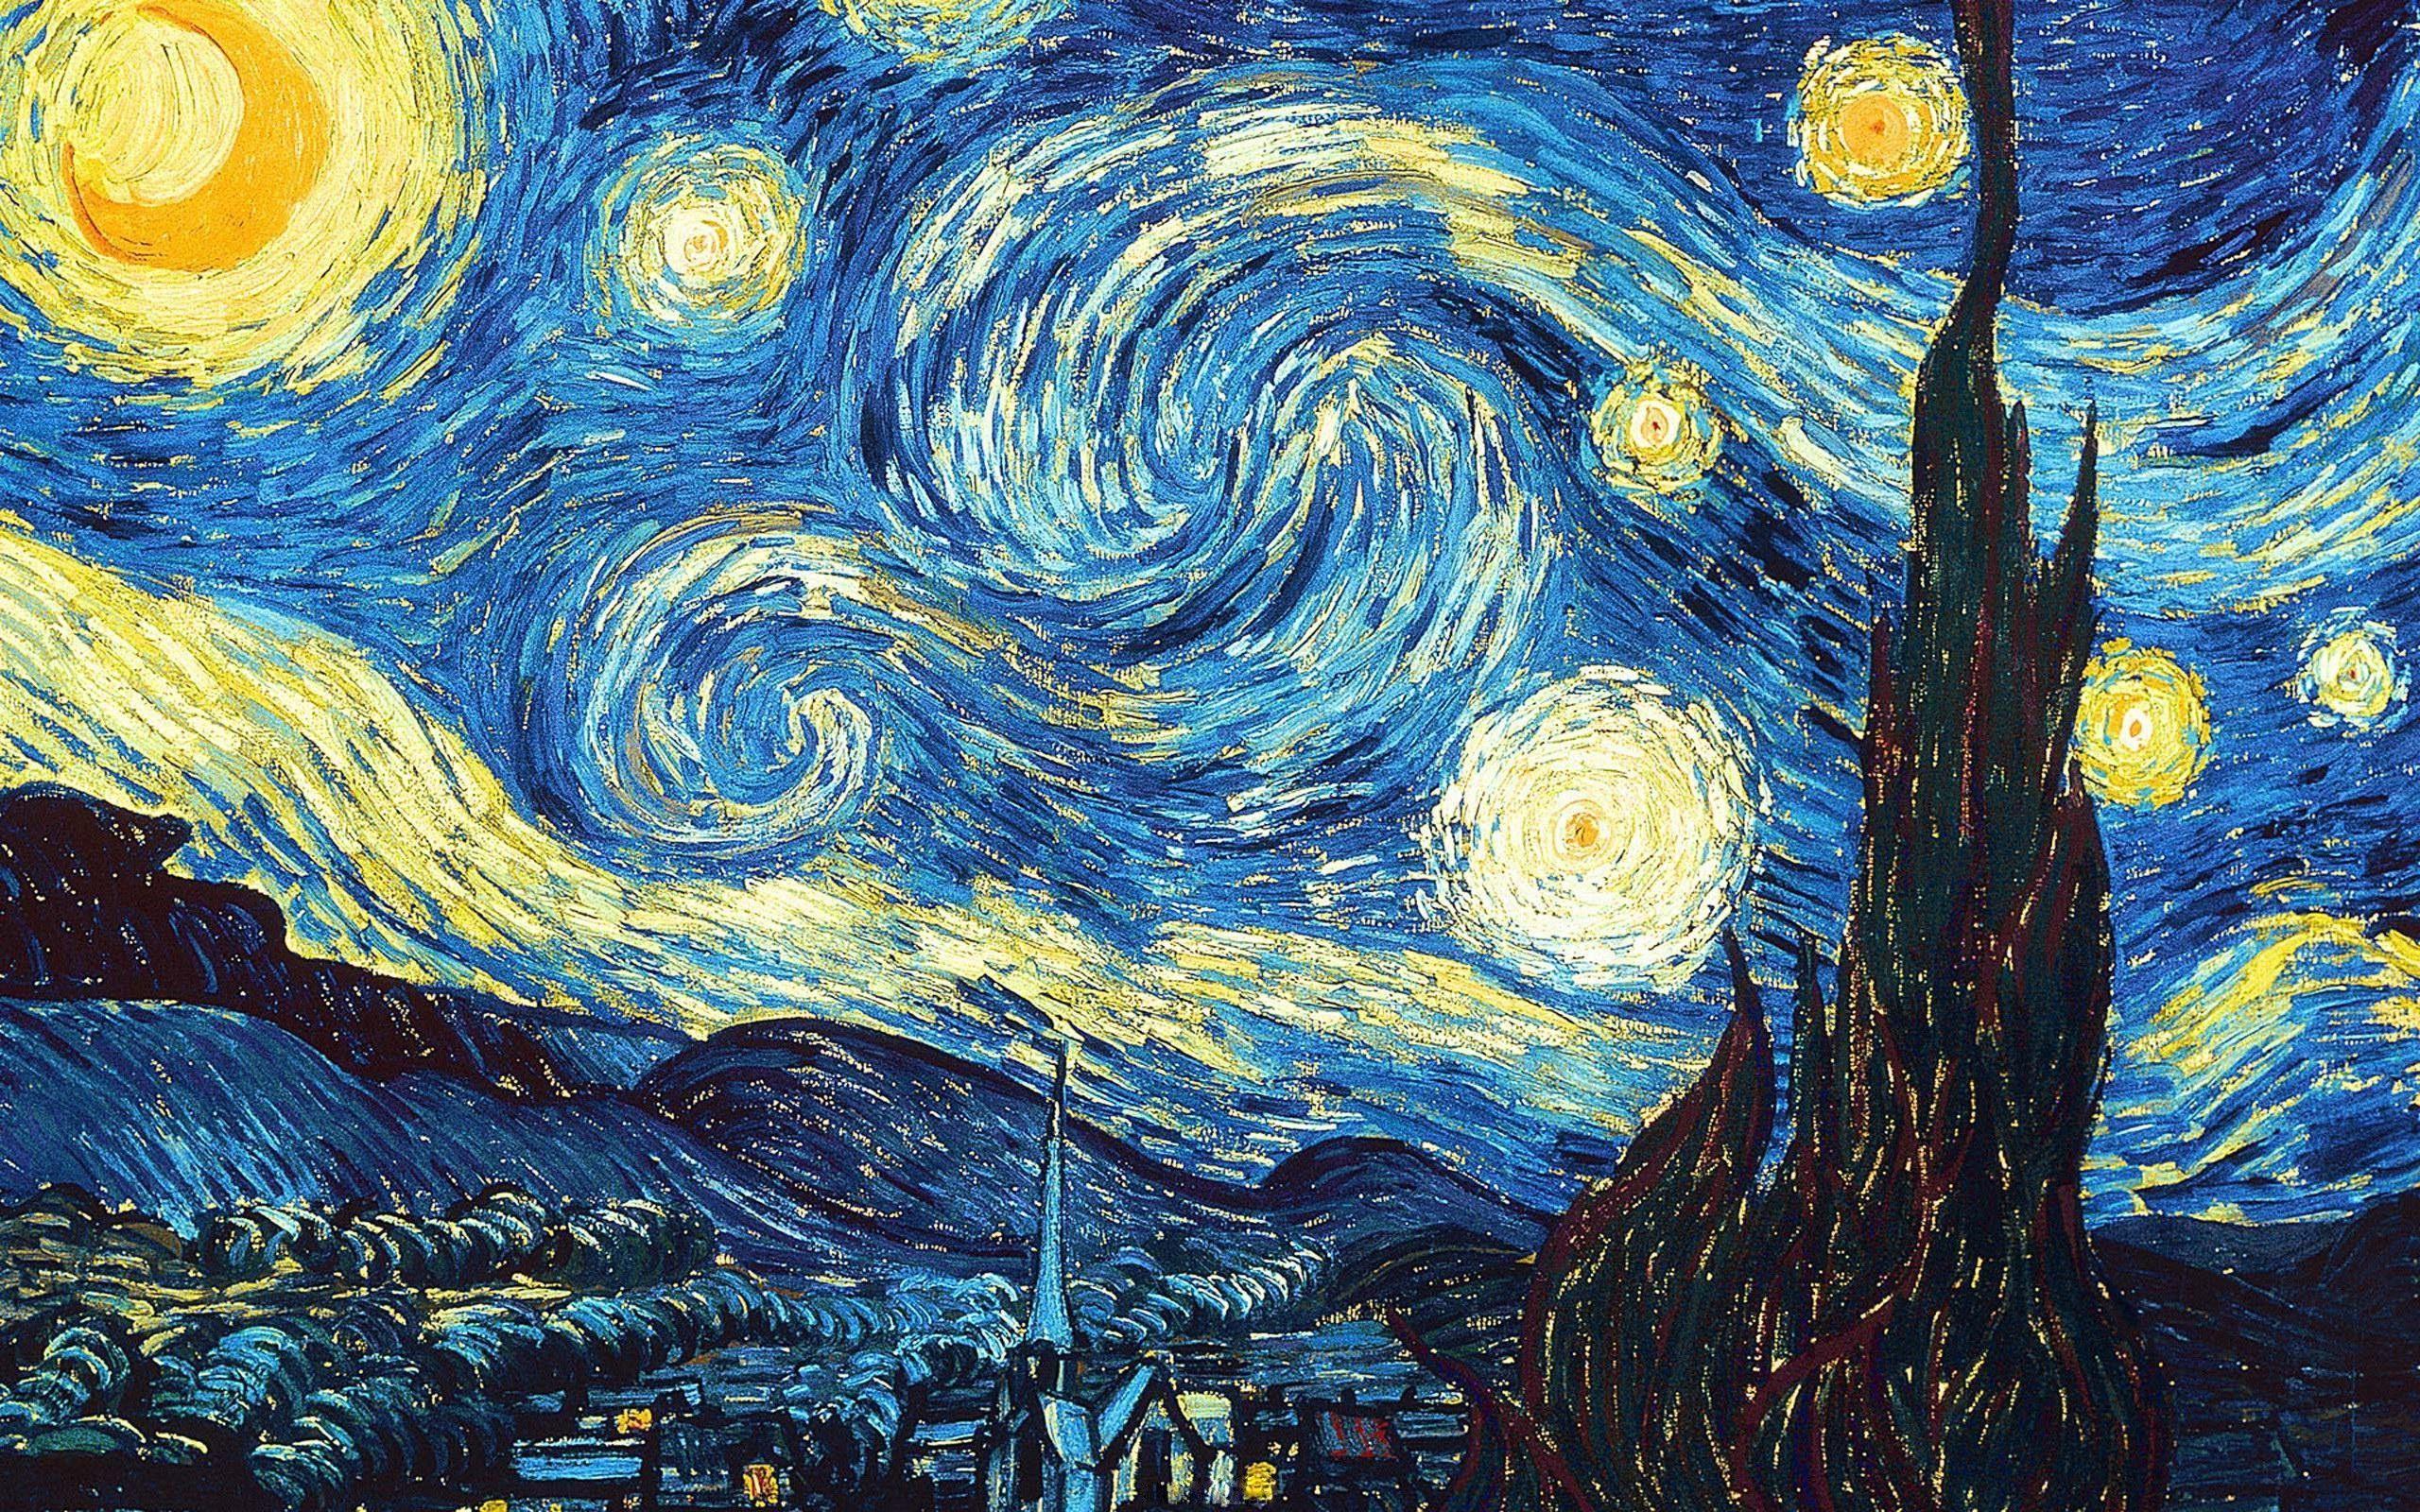 Van Gogh Paintings PC Wallpapers - Top Free Van Gogh Paintings PC